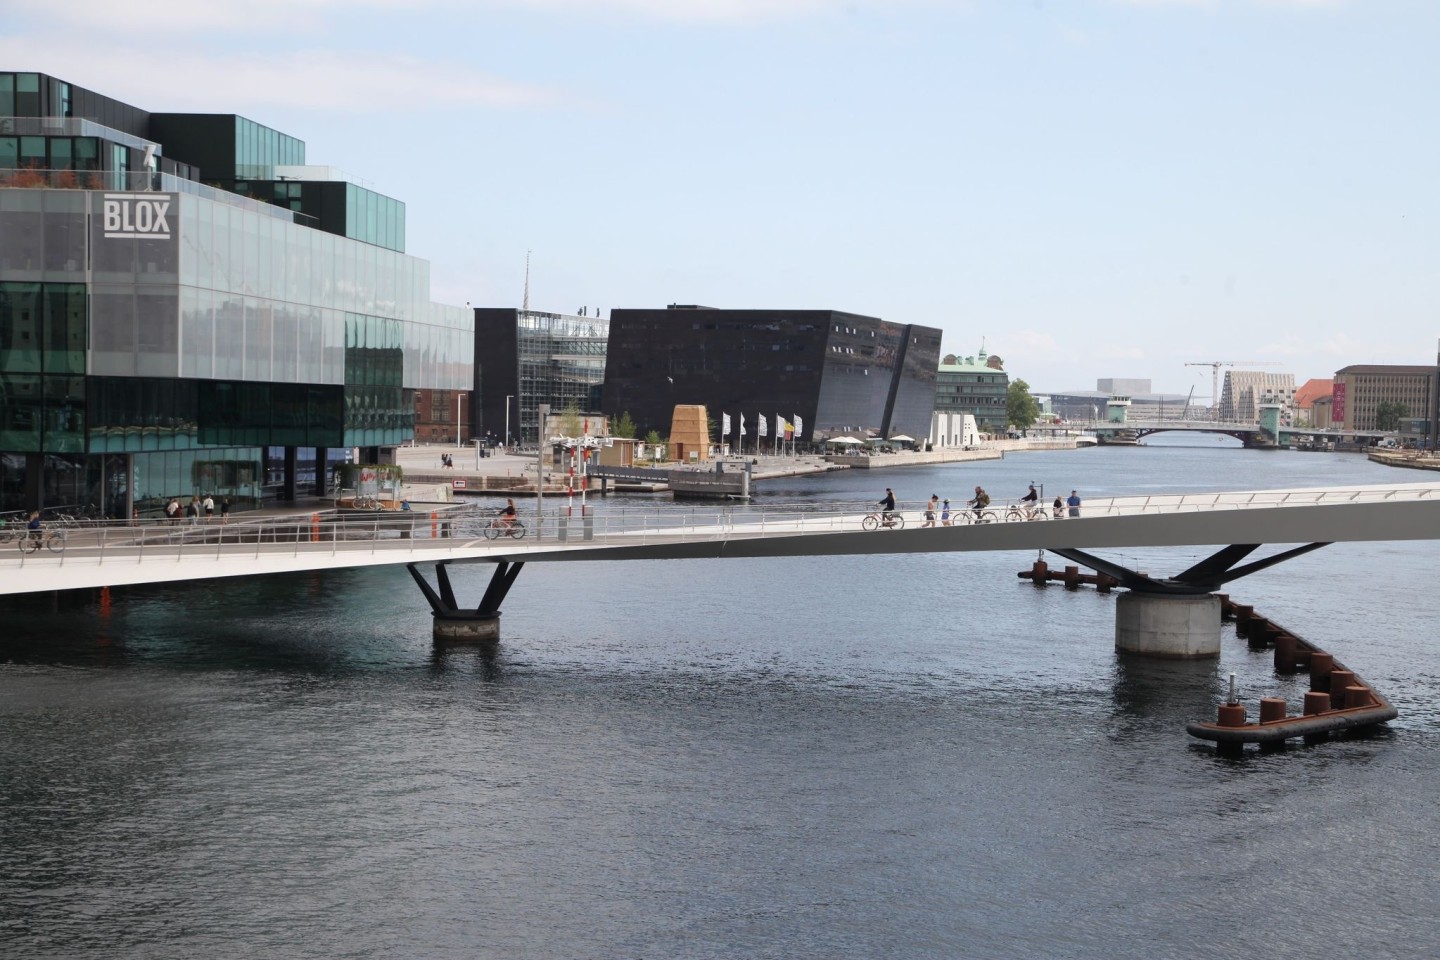 Die Lille Langebro (Kleine Lange Brücke), die über Kopenhagens inneren Hafen führt. Die dänische Hauptstadt richtet in den kommenden Tagen den 28. Weltkongress der Architekten aus.